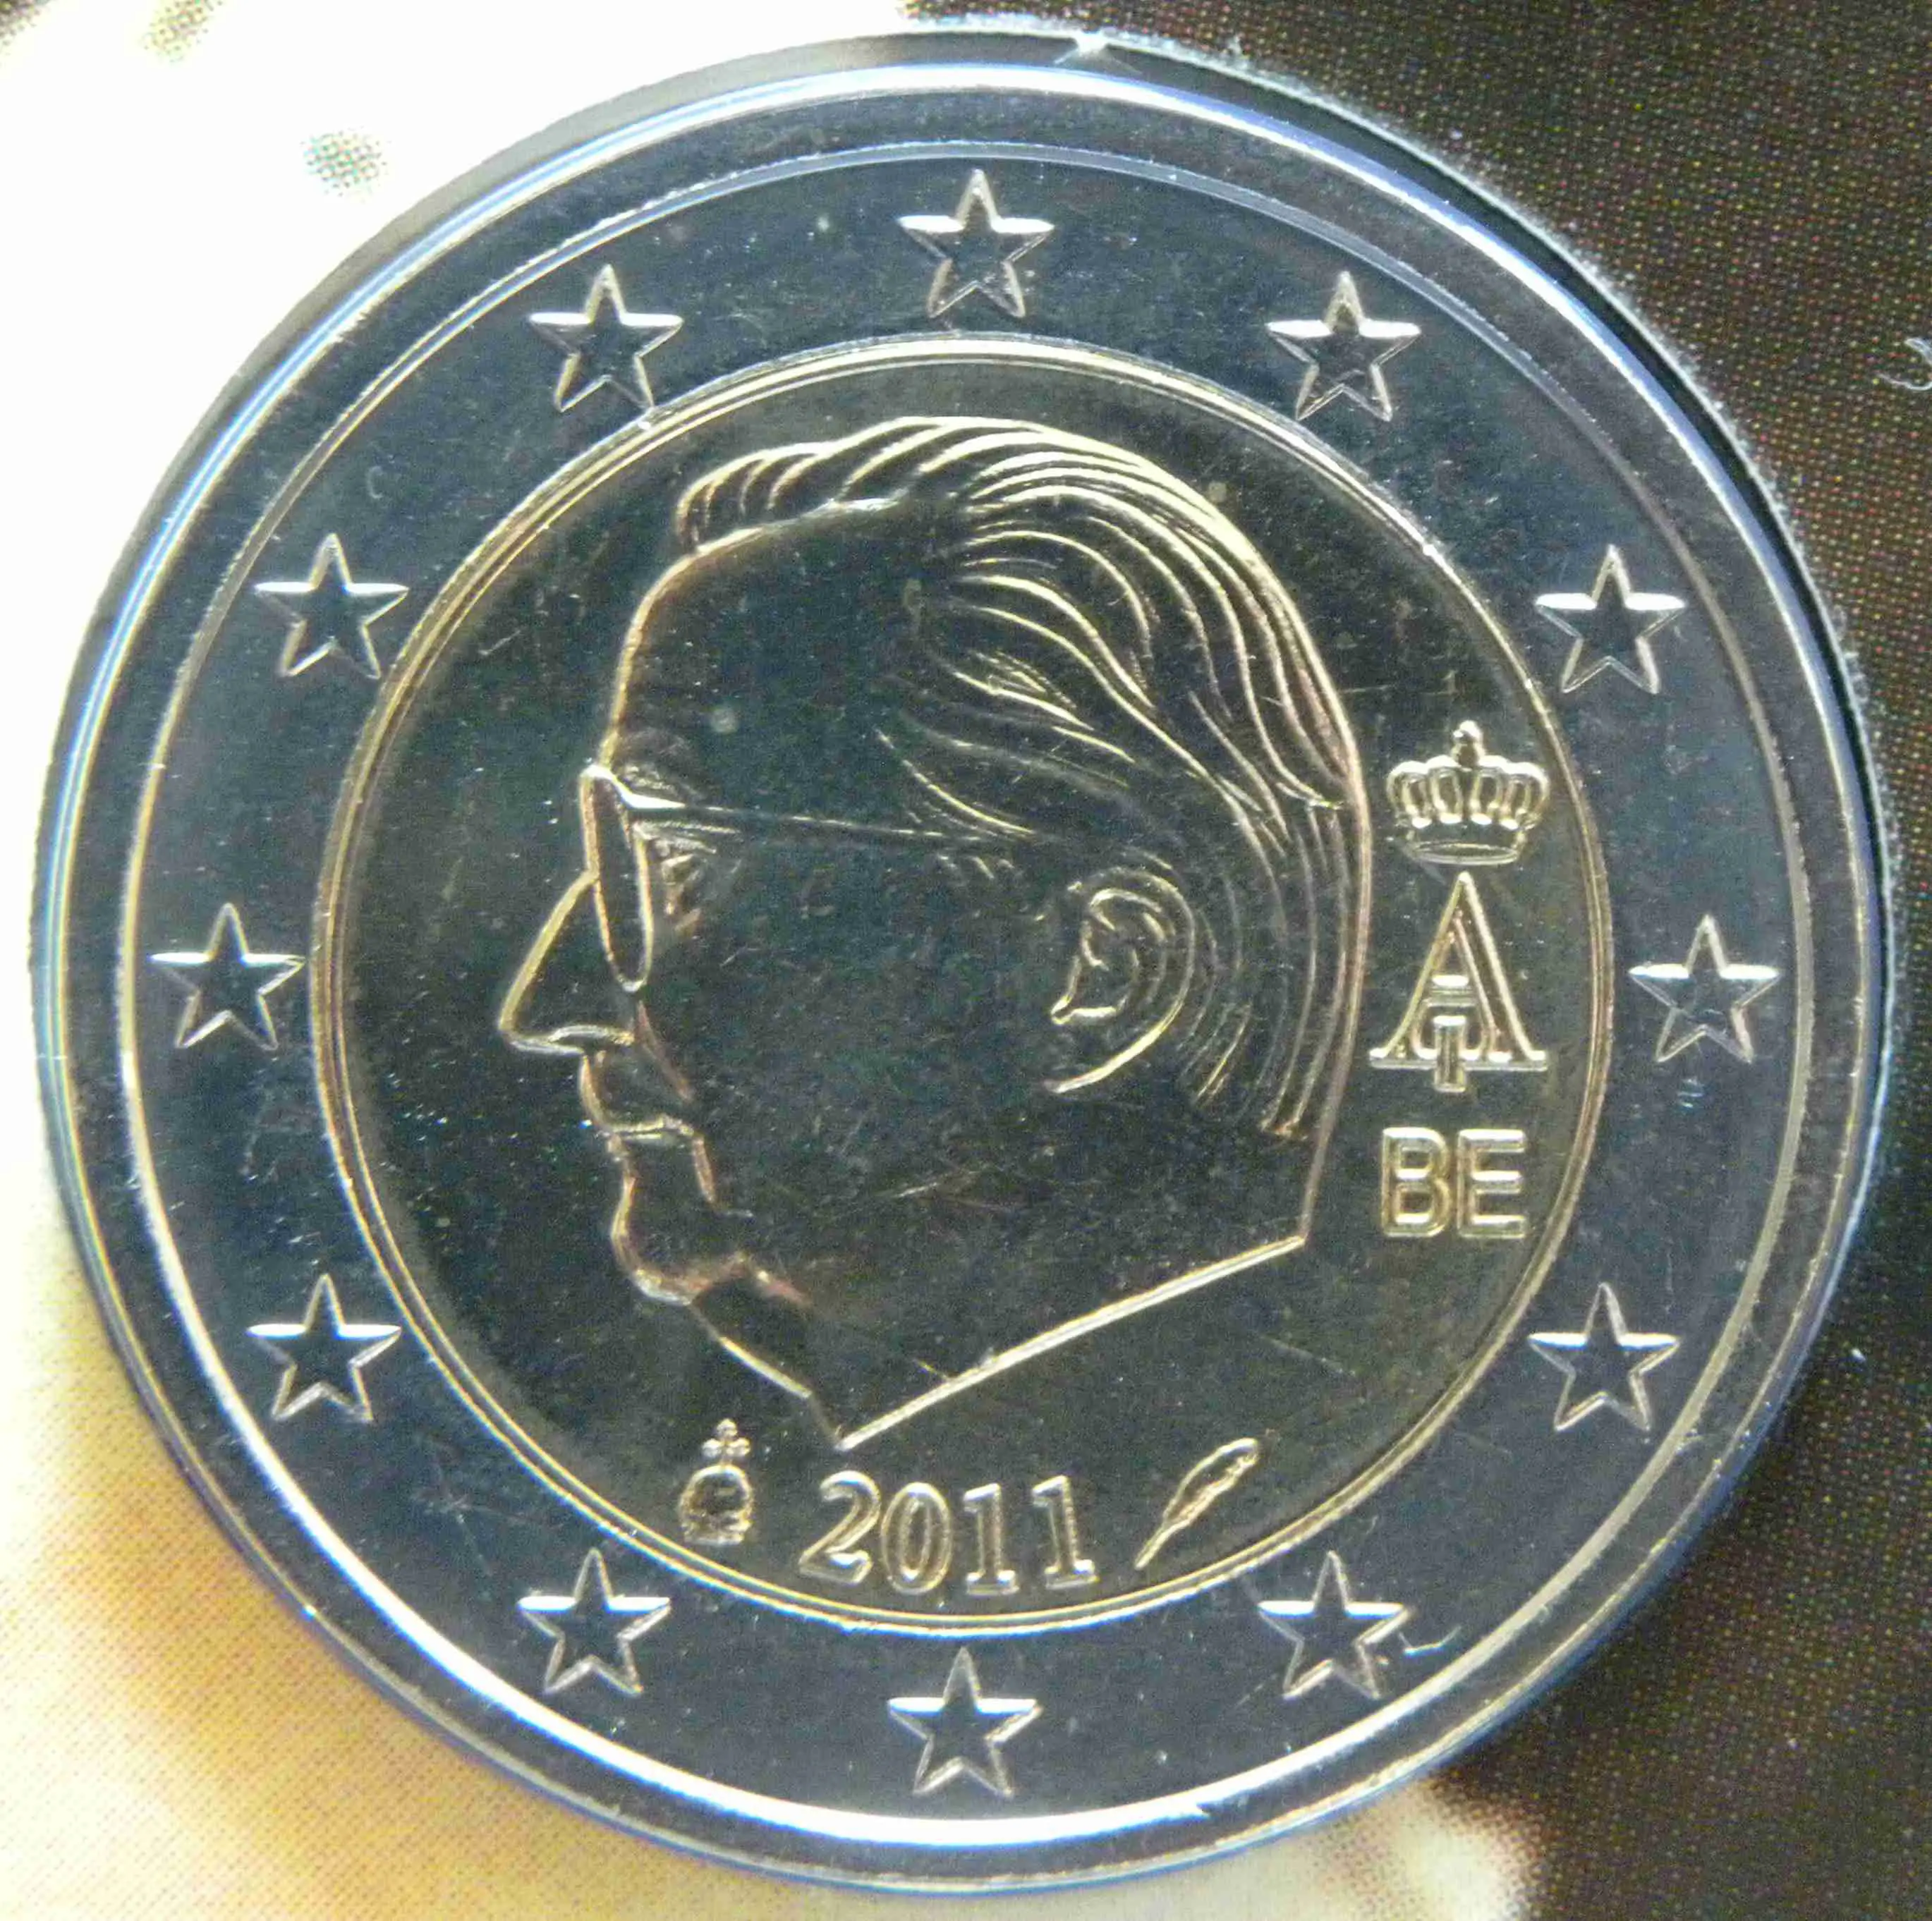 Belgium 2 Euro Coin 2011  eurocoins.tv  The Online Eurocoins Catalogue